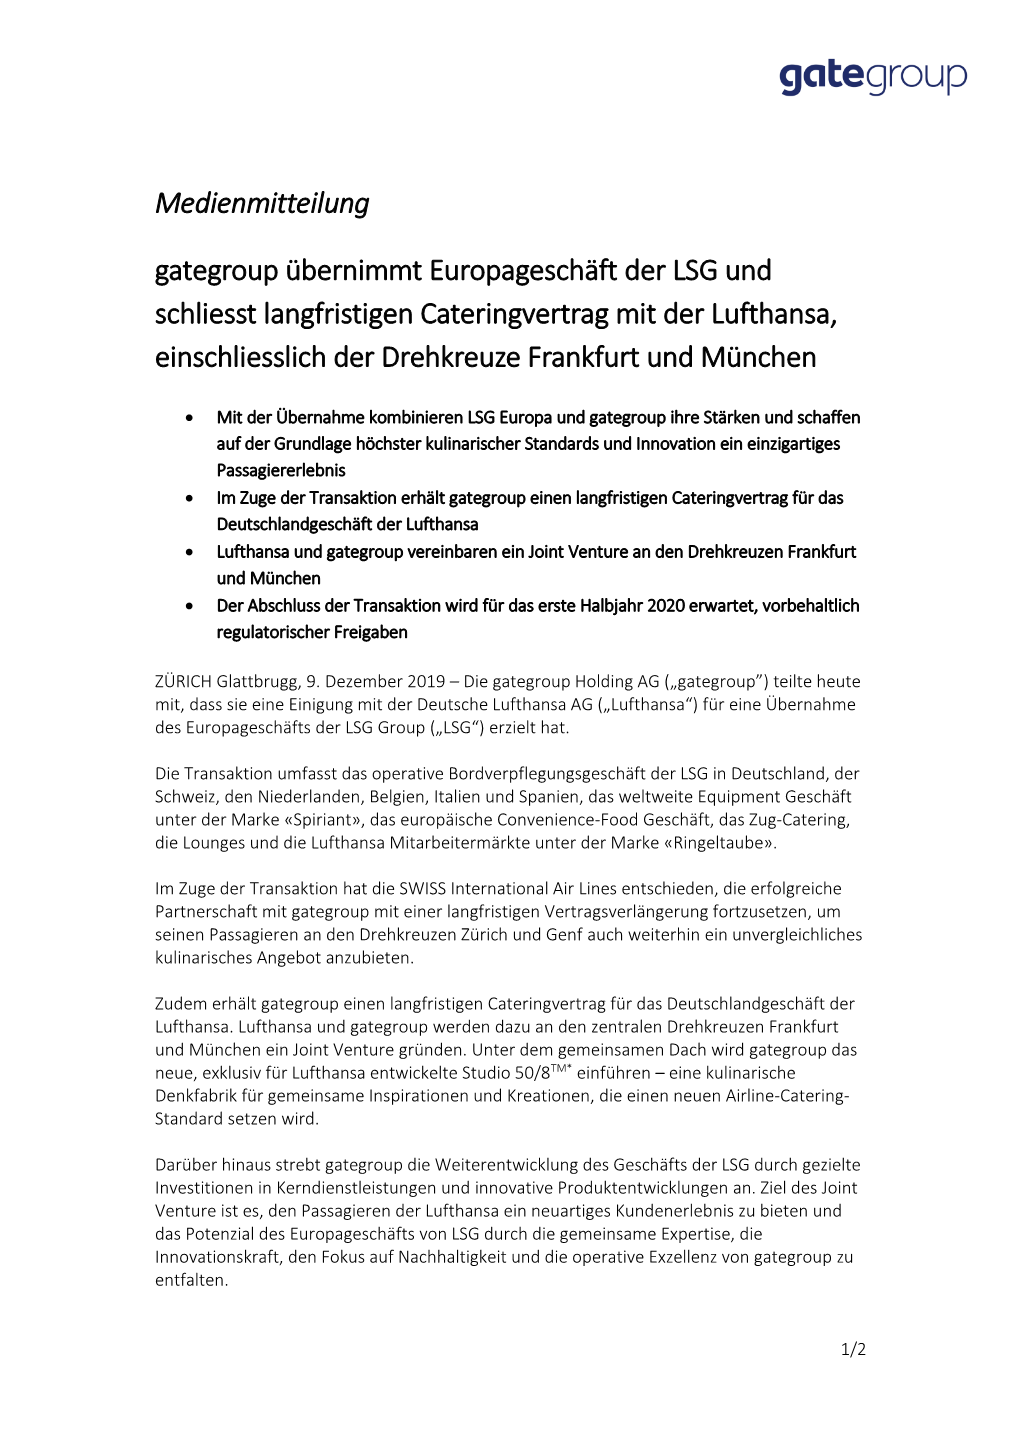 Medienmitteilung Gategroup Übernimmt Europageschäft Der LSG